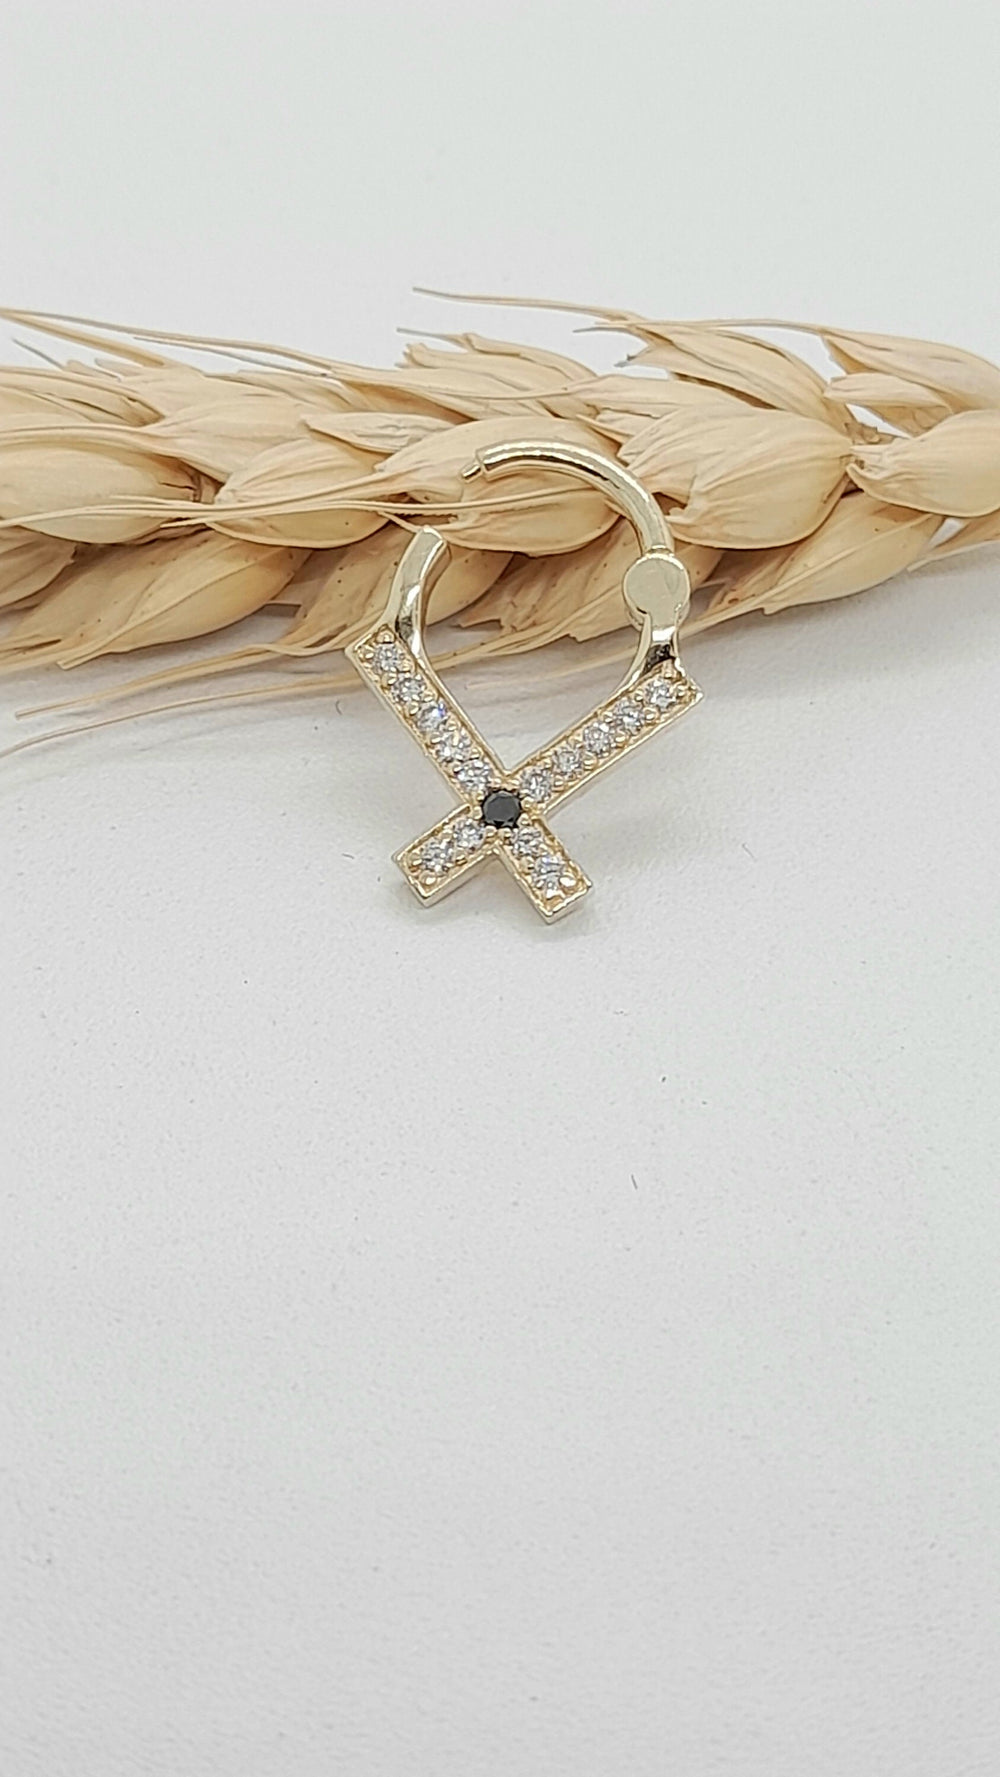 X Cross Piercing Jewelry